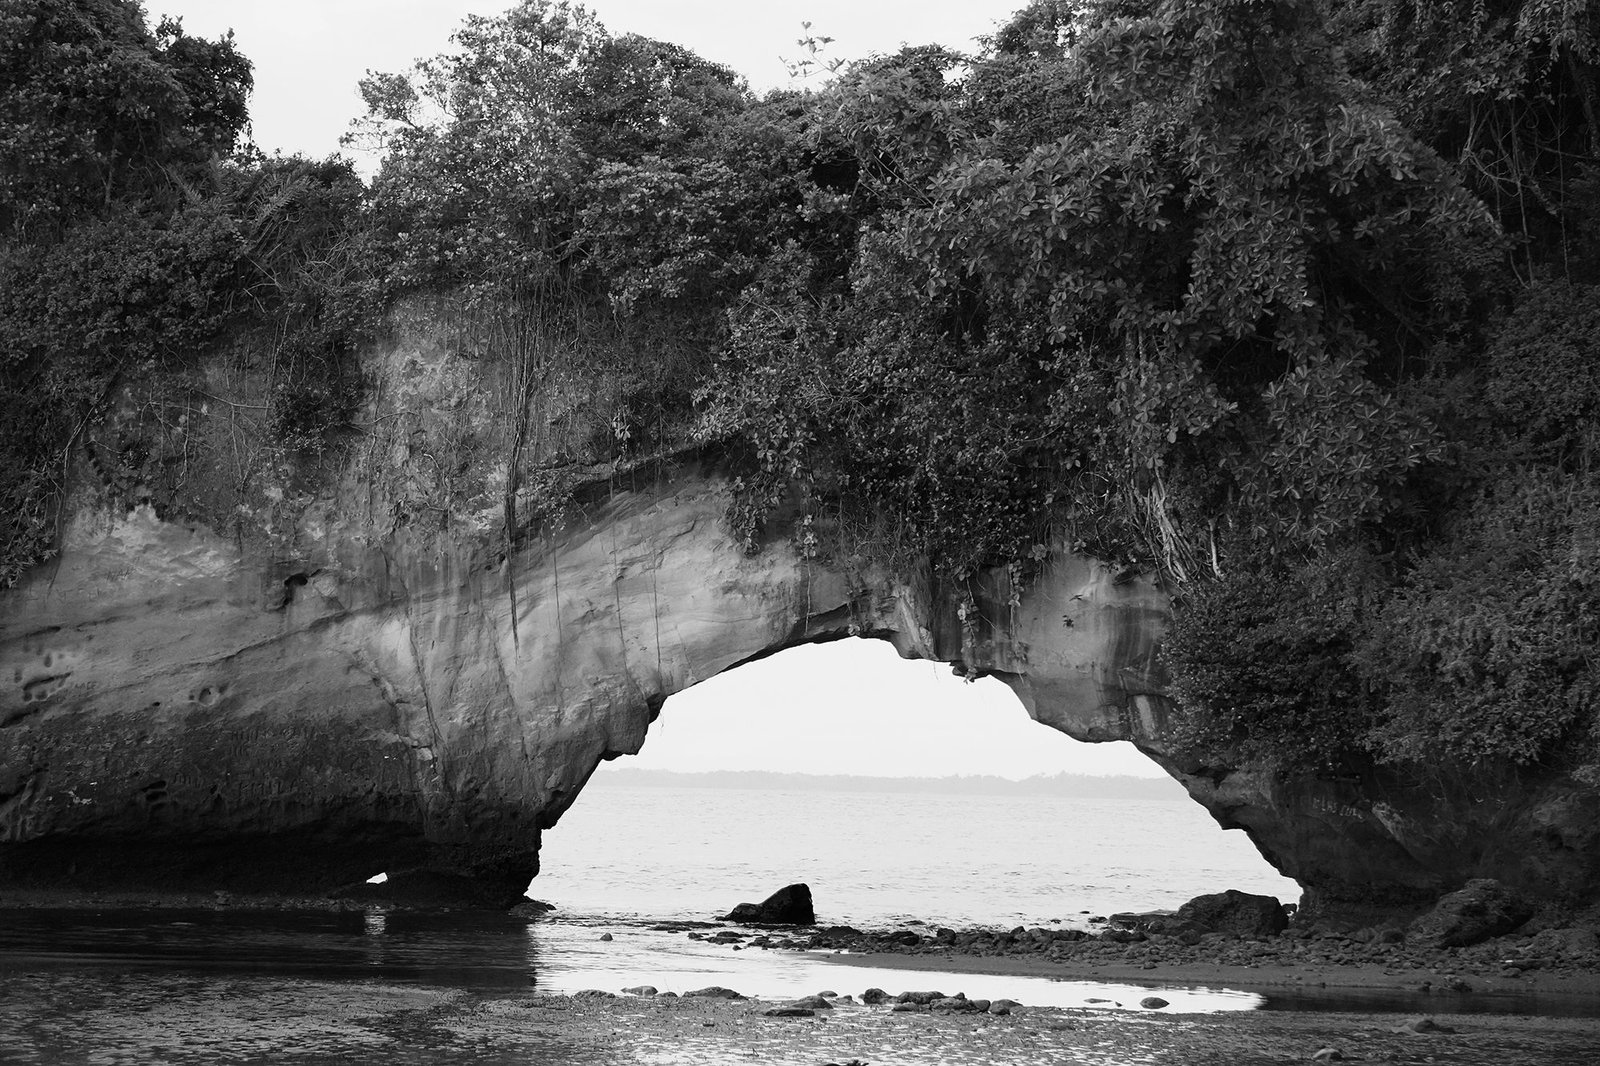 Arco natural, ubicado en la isla de El Morro es uno de los íconos de Tumaco y el Pacífico sur colombiano, un atractivo ecoturístico que se ve afectado por la contaminación de residuos sólidos.